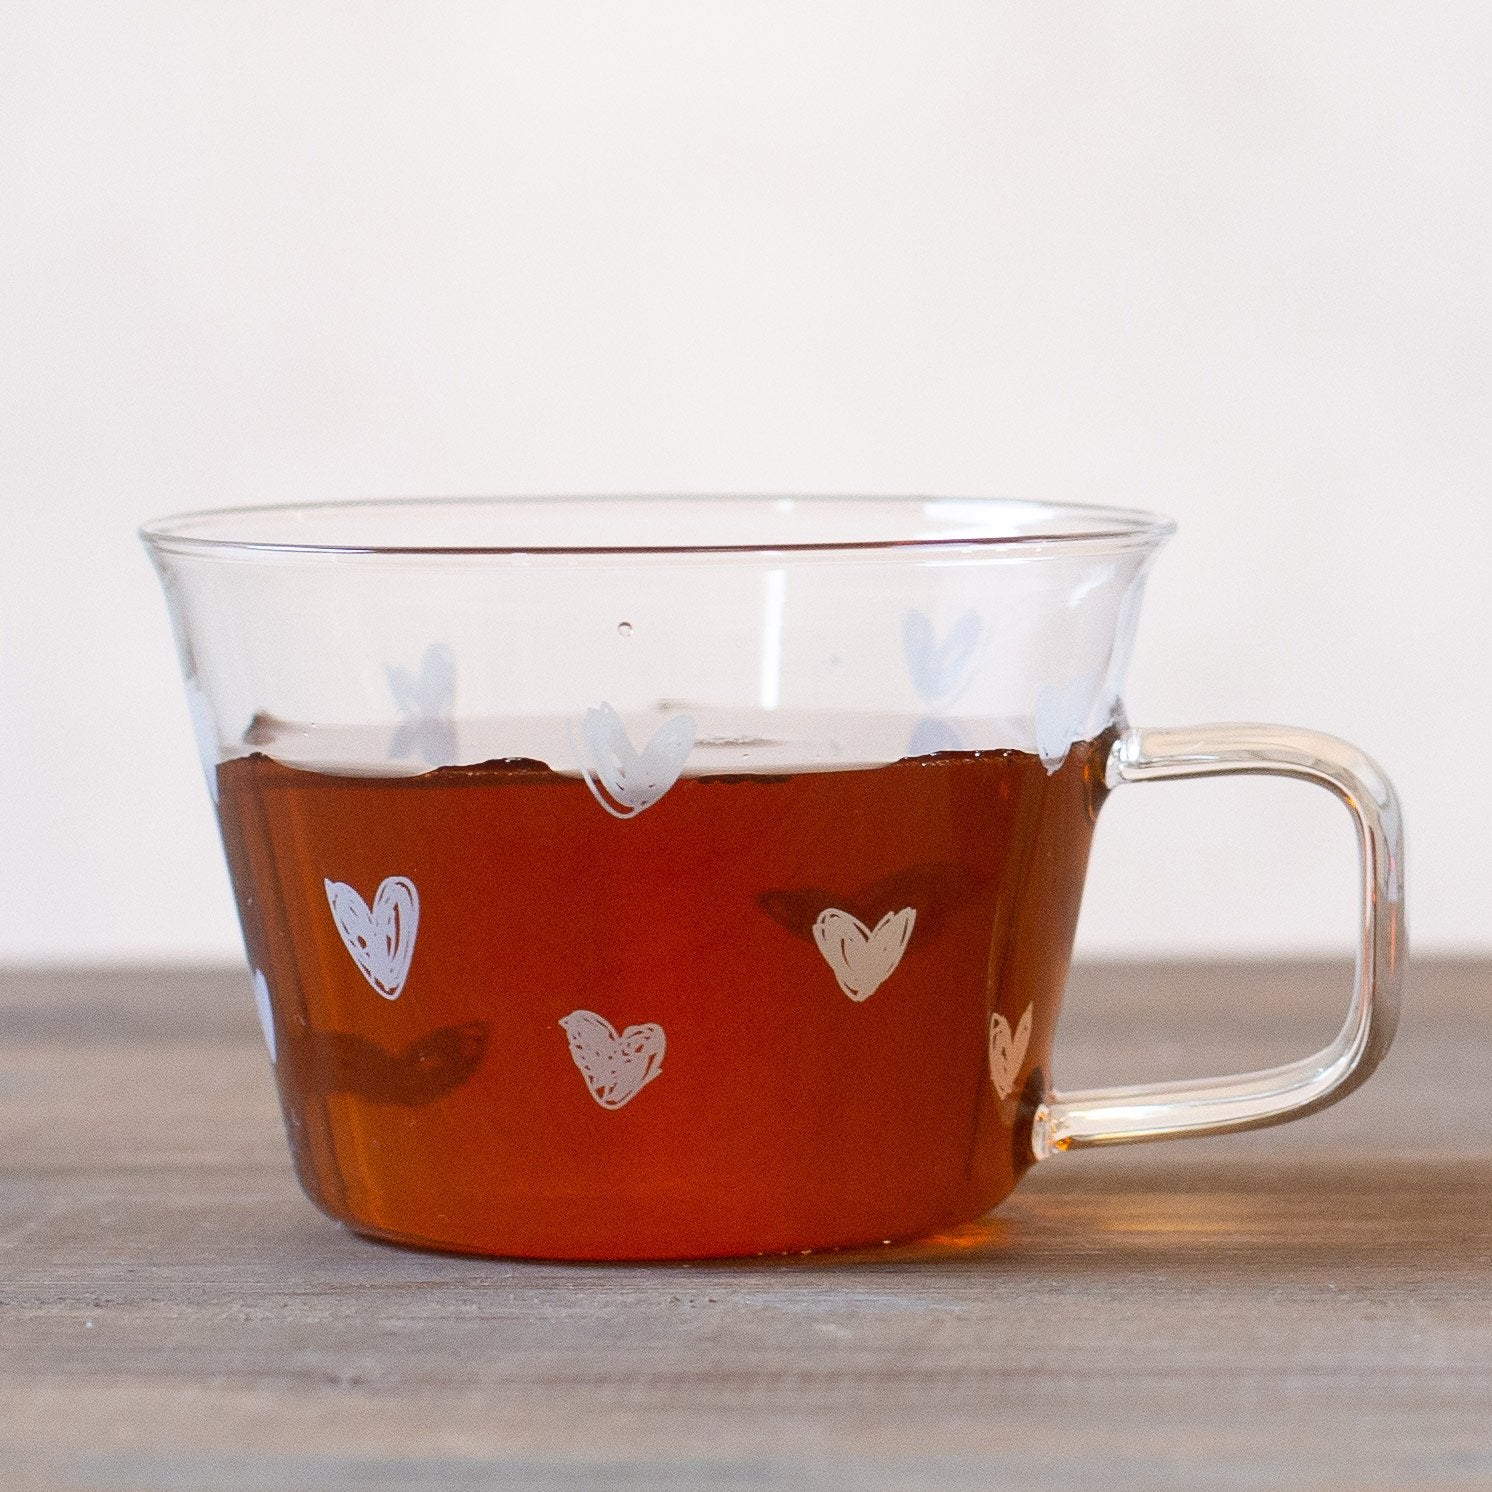 Establezca 2 tazas de té o corazones de capuchino